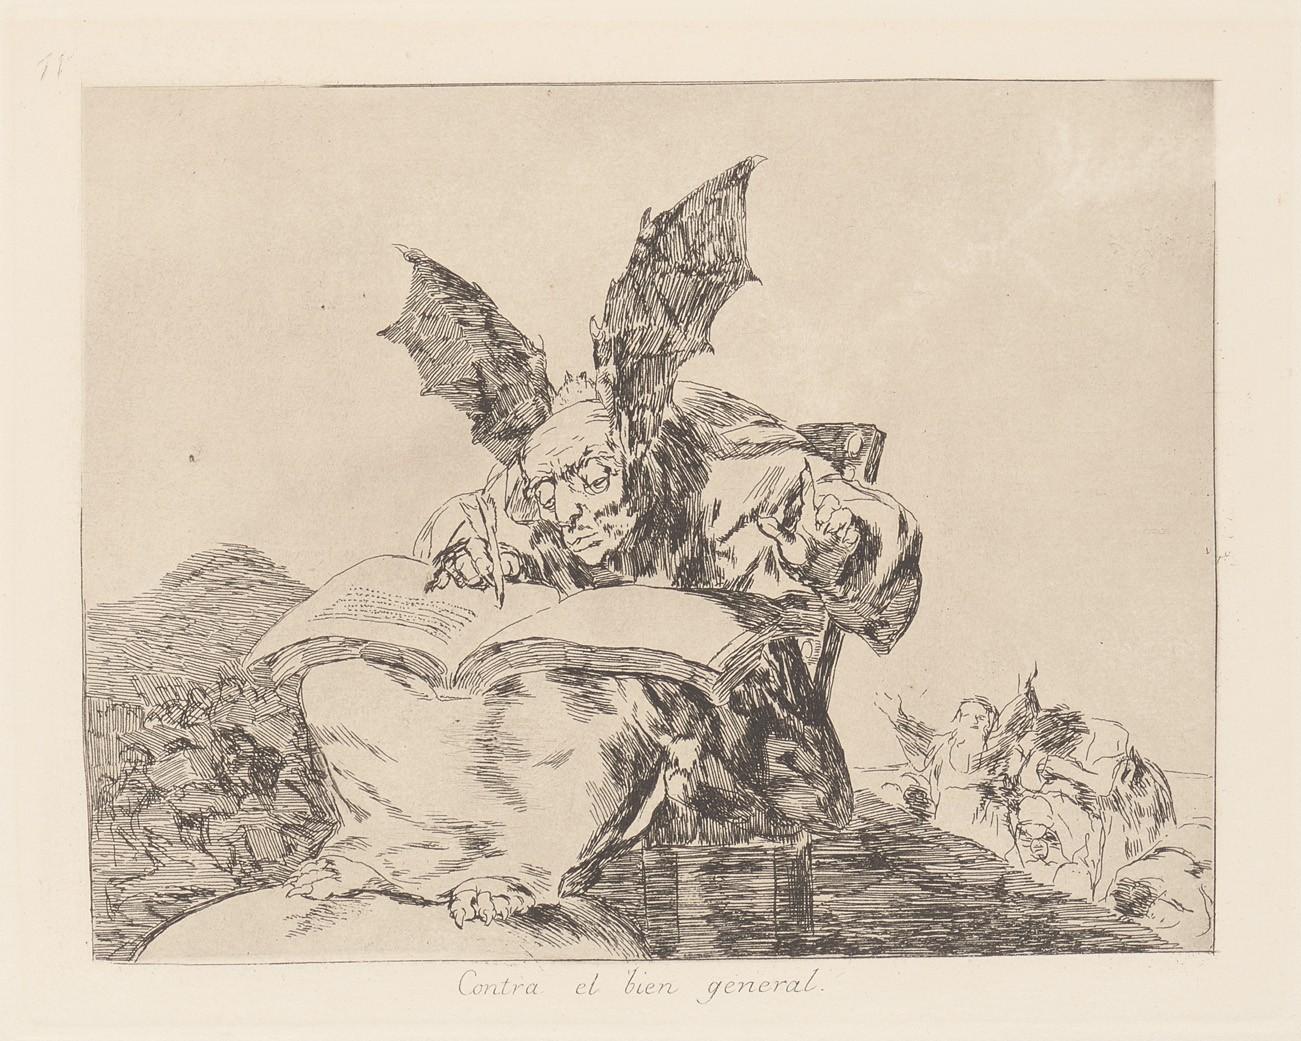 Against the common good. (Contra el bien general) - Goya y Lucientes Francisco